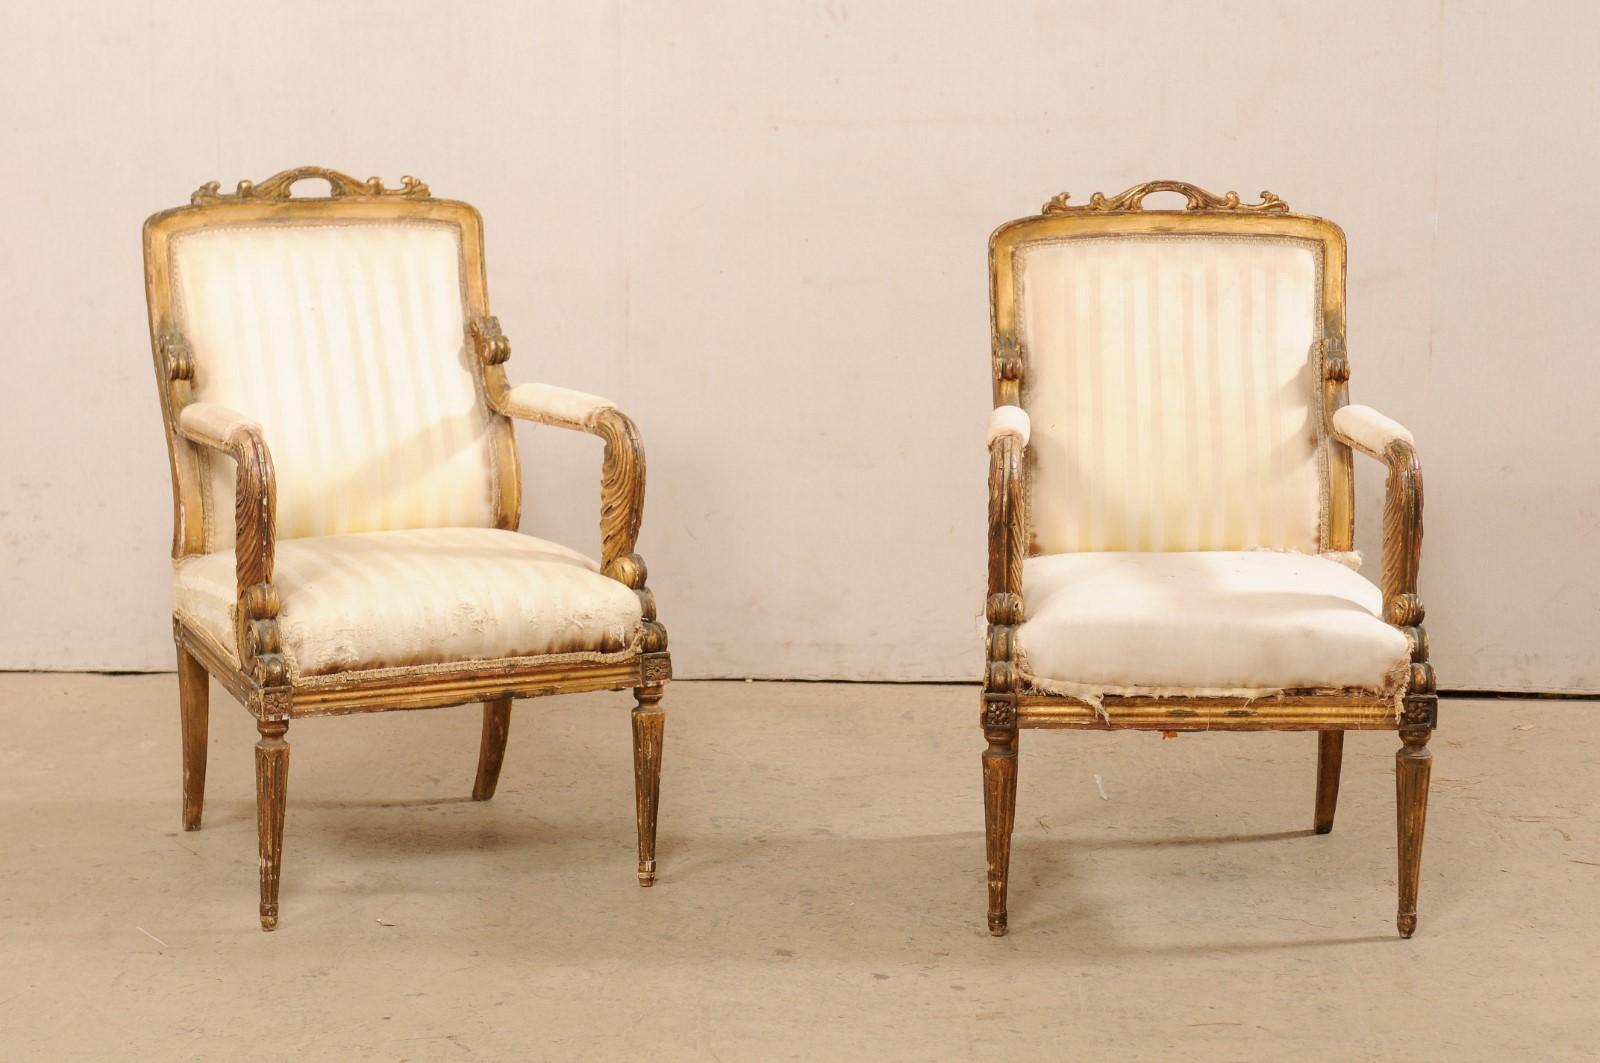 Paire de fauteuils de style Louis XVI en bois sculpté, datant du début du XIXe siècle. Cette paire de fauteuils anciens de France est sculptée à la main dans les influences de la période Louis XVI. Chacun d'entre eux présente un dossier